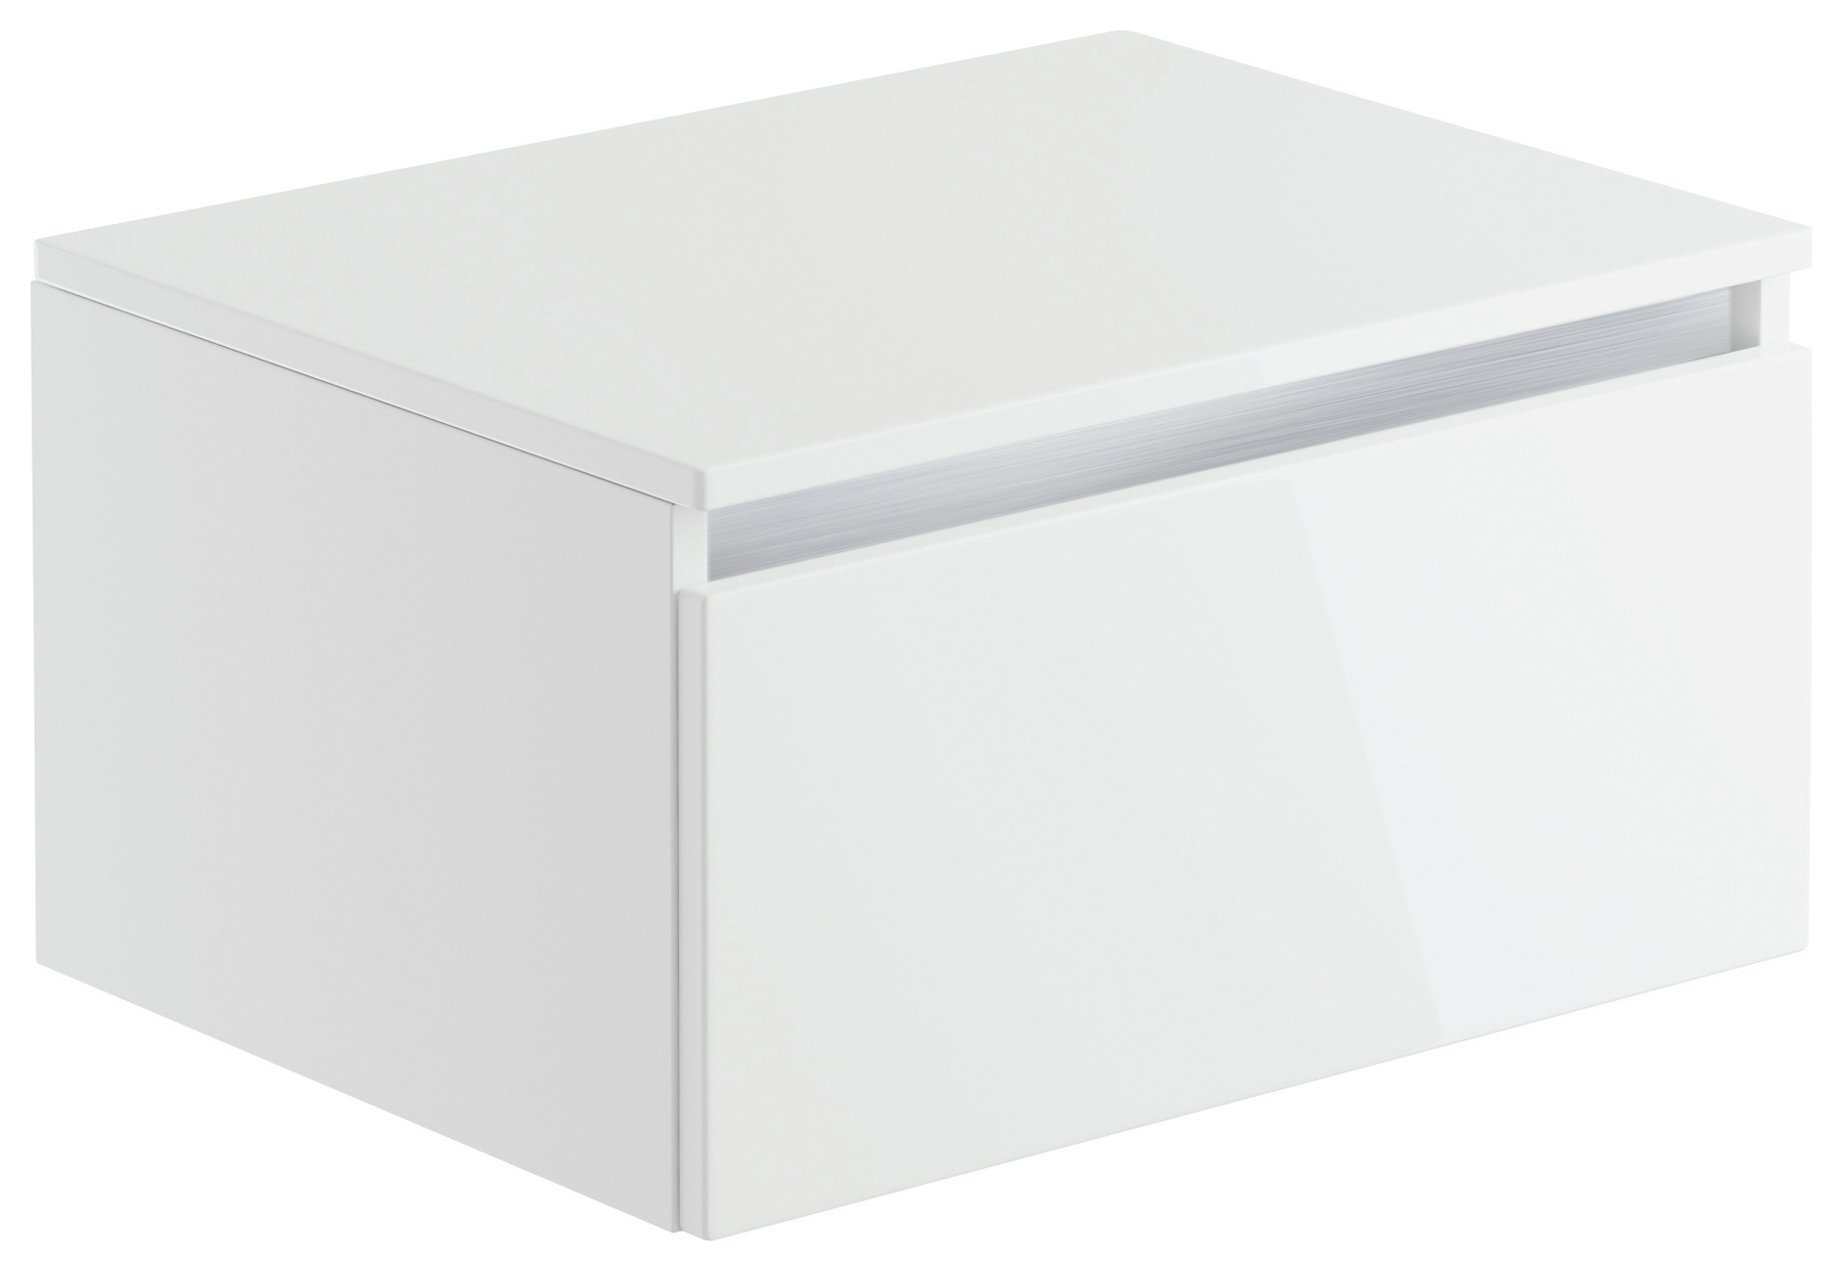 Lavari 1 Drawer Unit - White Gloss.